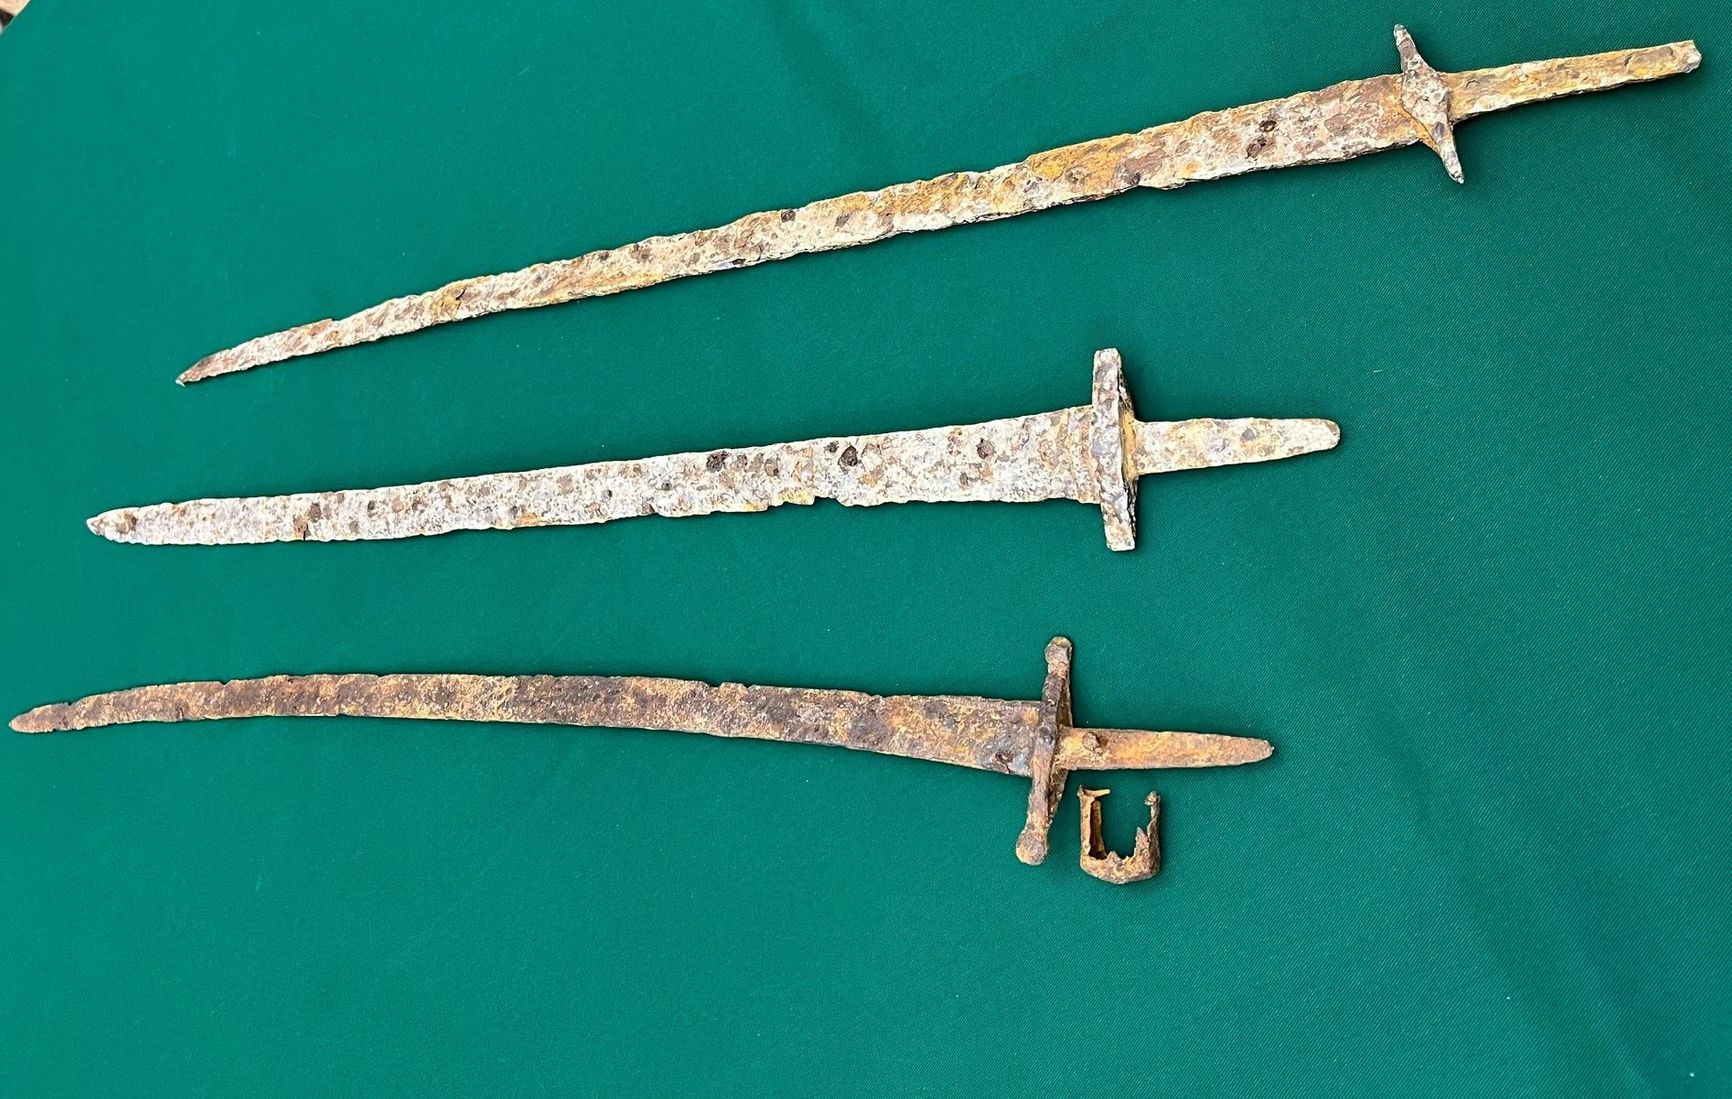 Американские власти передали Украине скифские мечи, похищенные с оккупированных территорий. Артефакты пытались незаконно ввезти в США